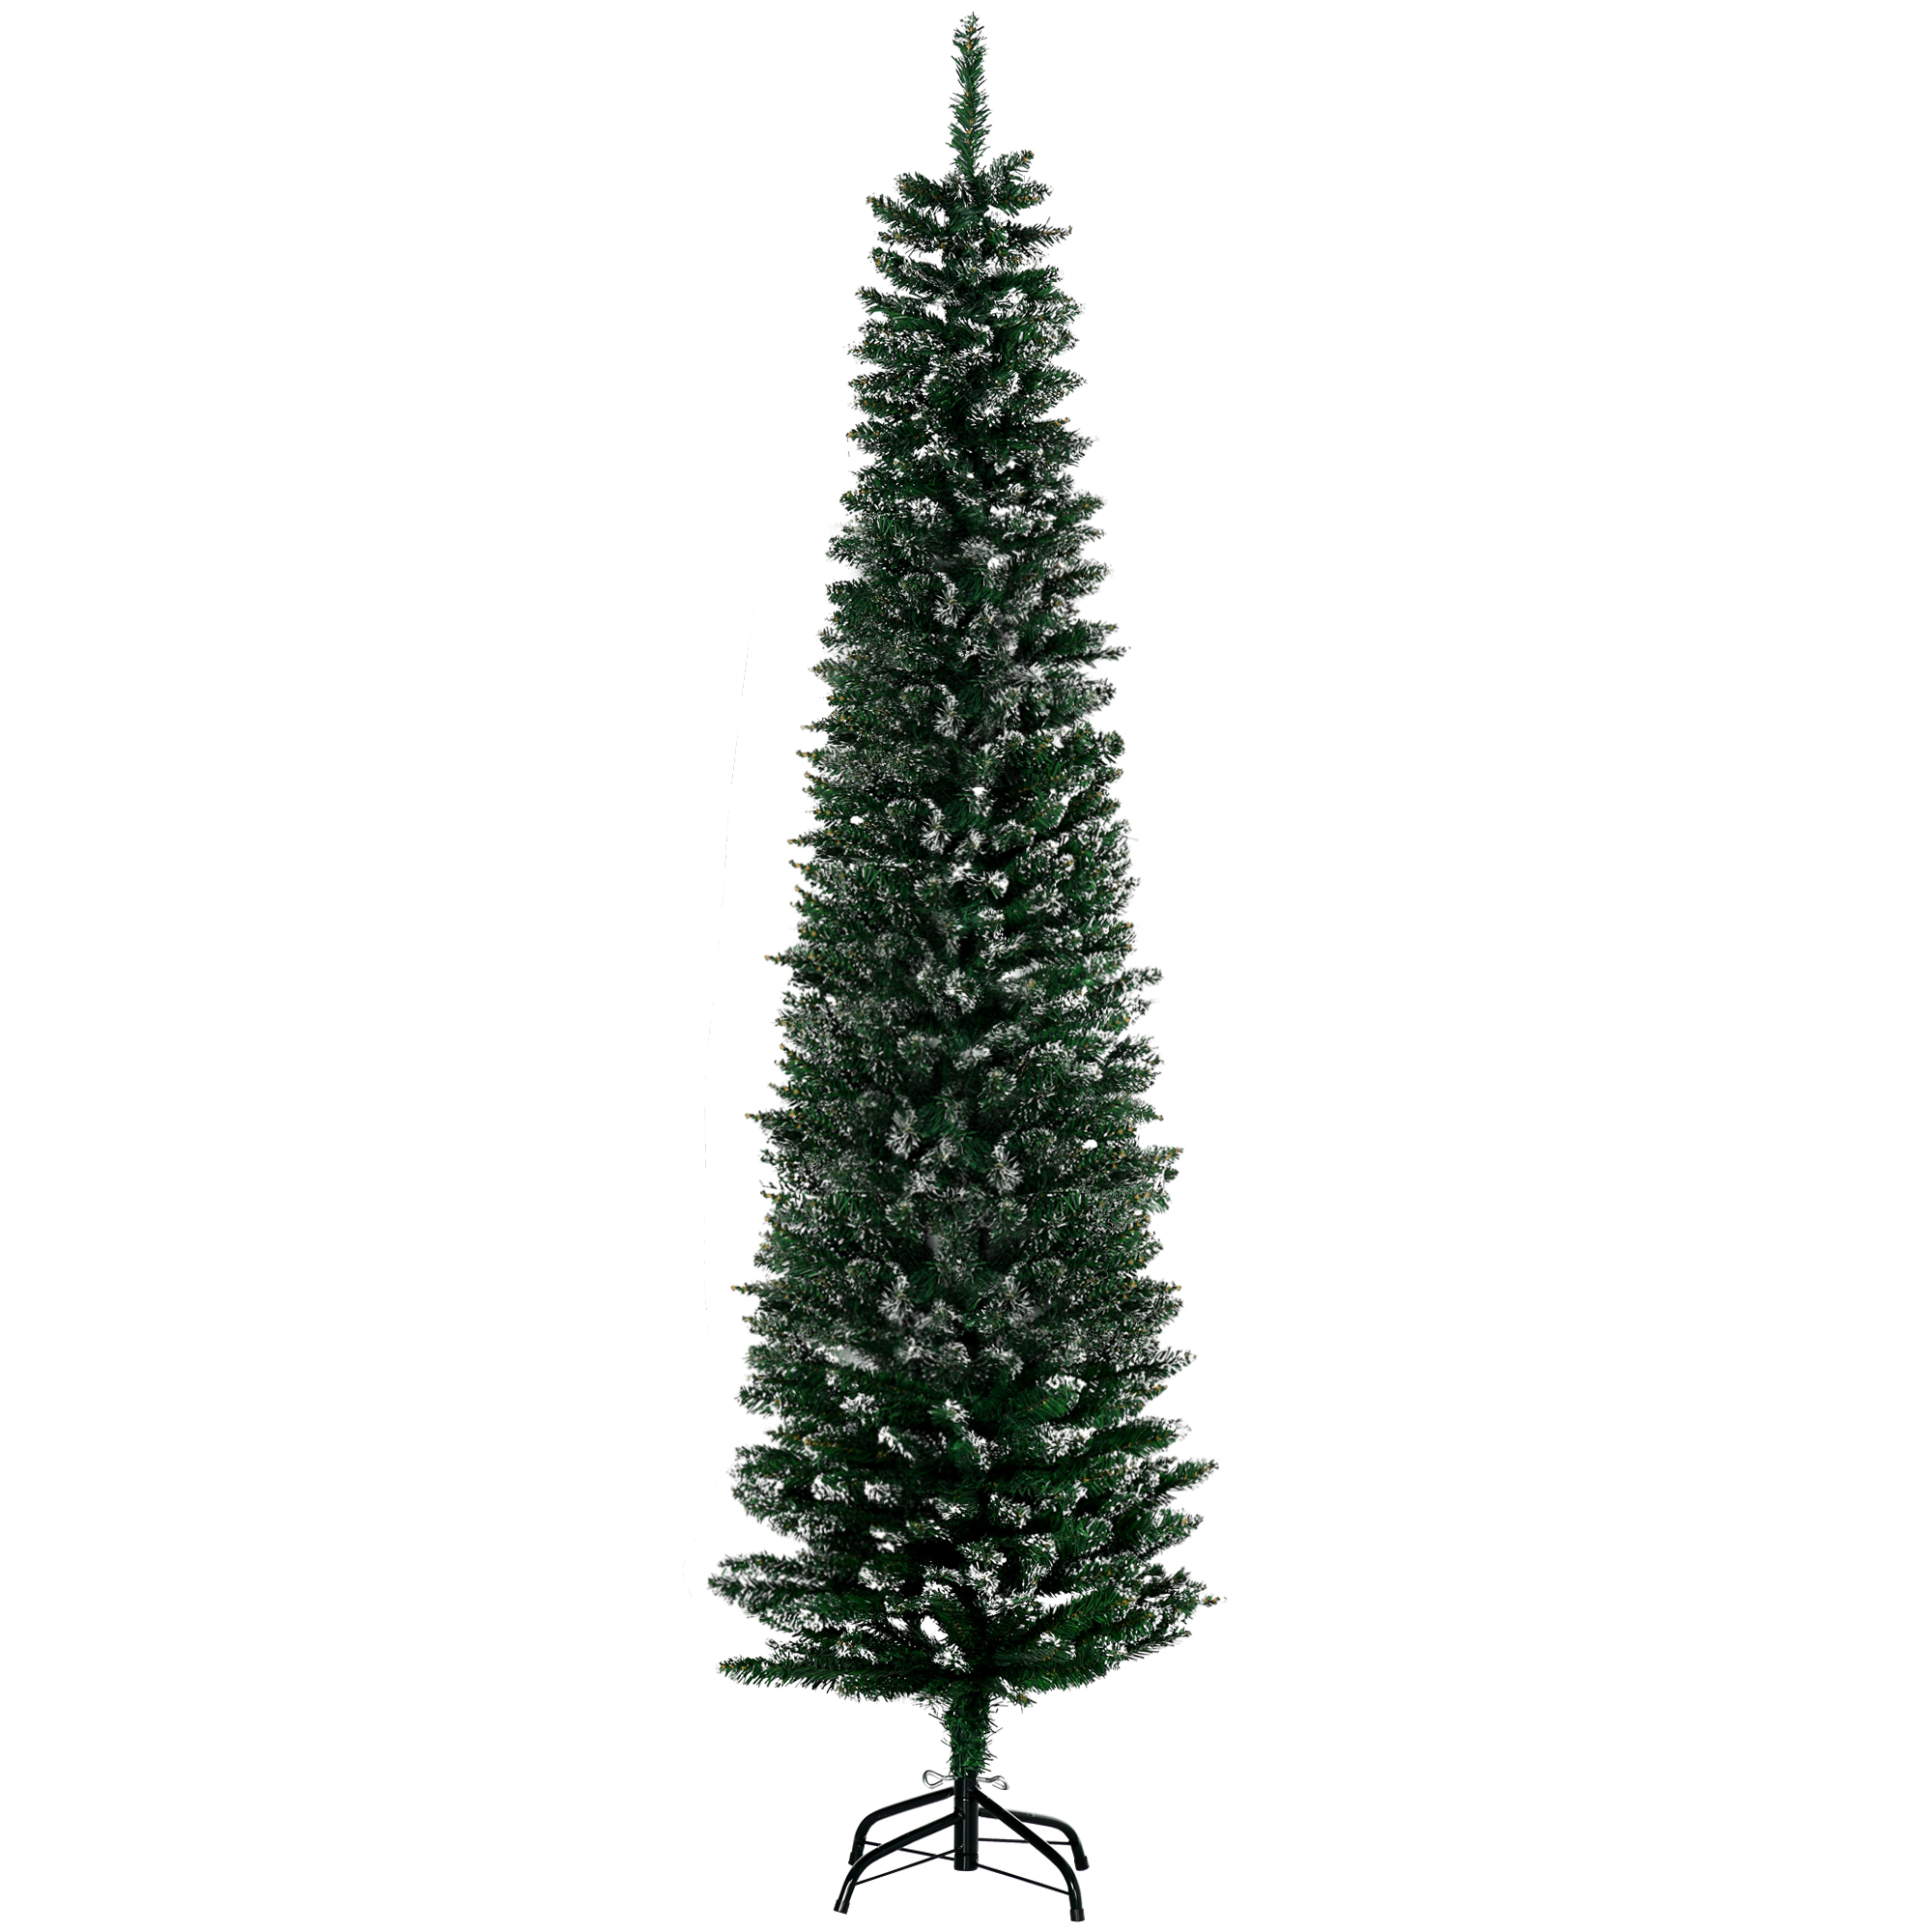 Ψηλό και Στενό Τεχνητό Χιονισμένο Χριστουγεννιάτικο Δέντρο με 570 Κλαδιά HOMCOM 830-324